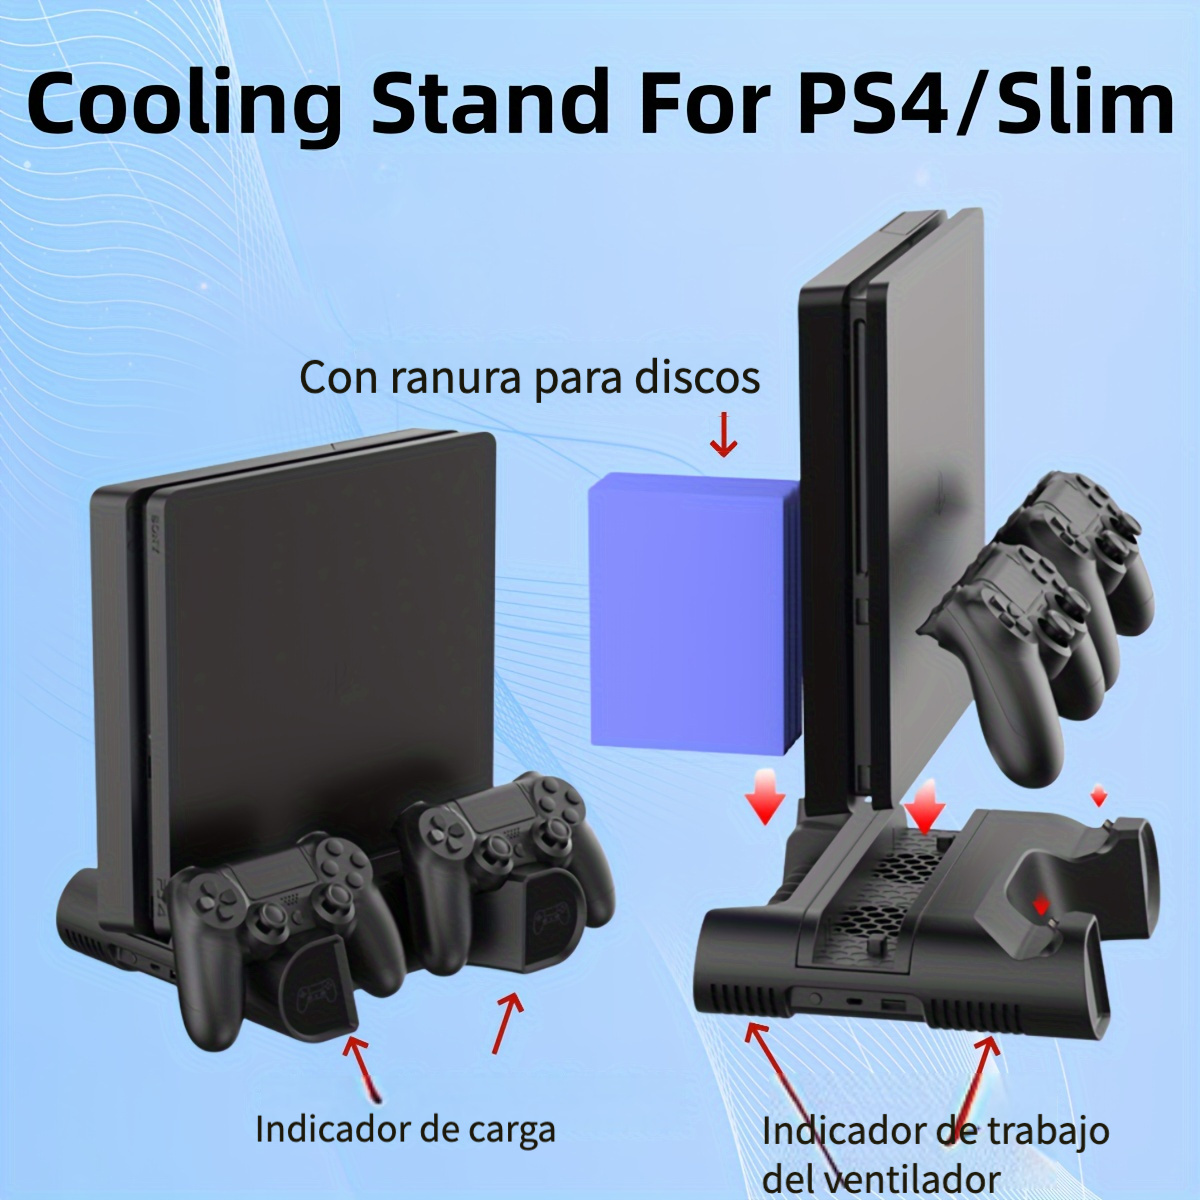 Cómo sincronizar un control de PS4 inalámbrico - Digital Trends Español